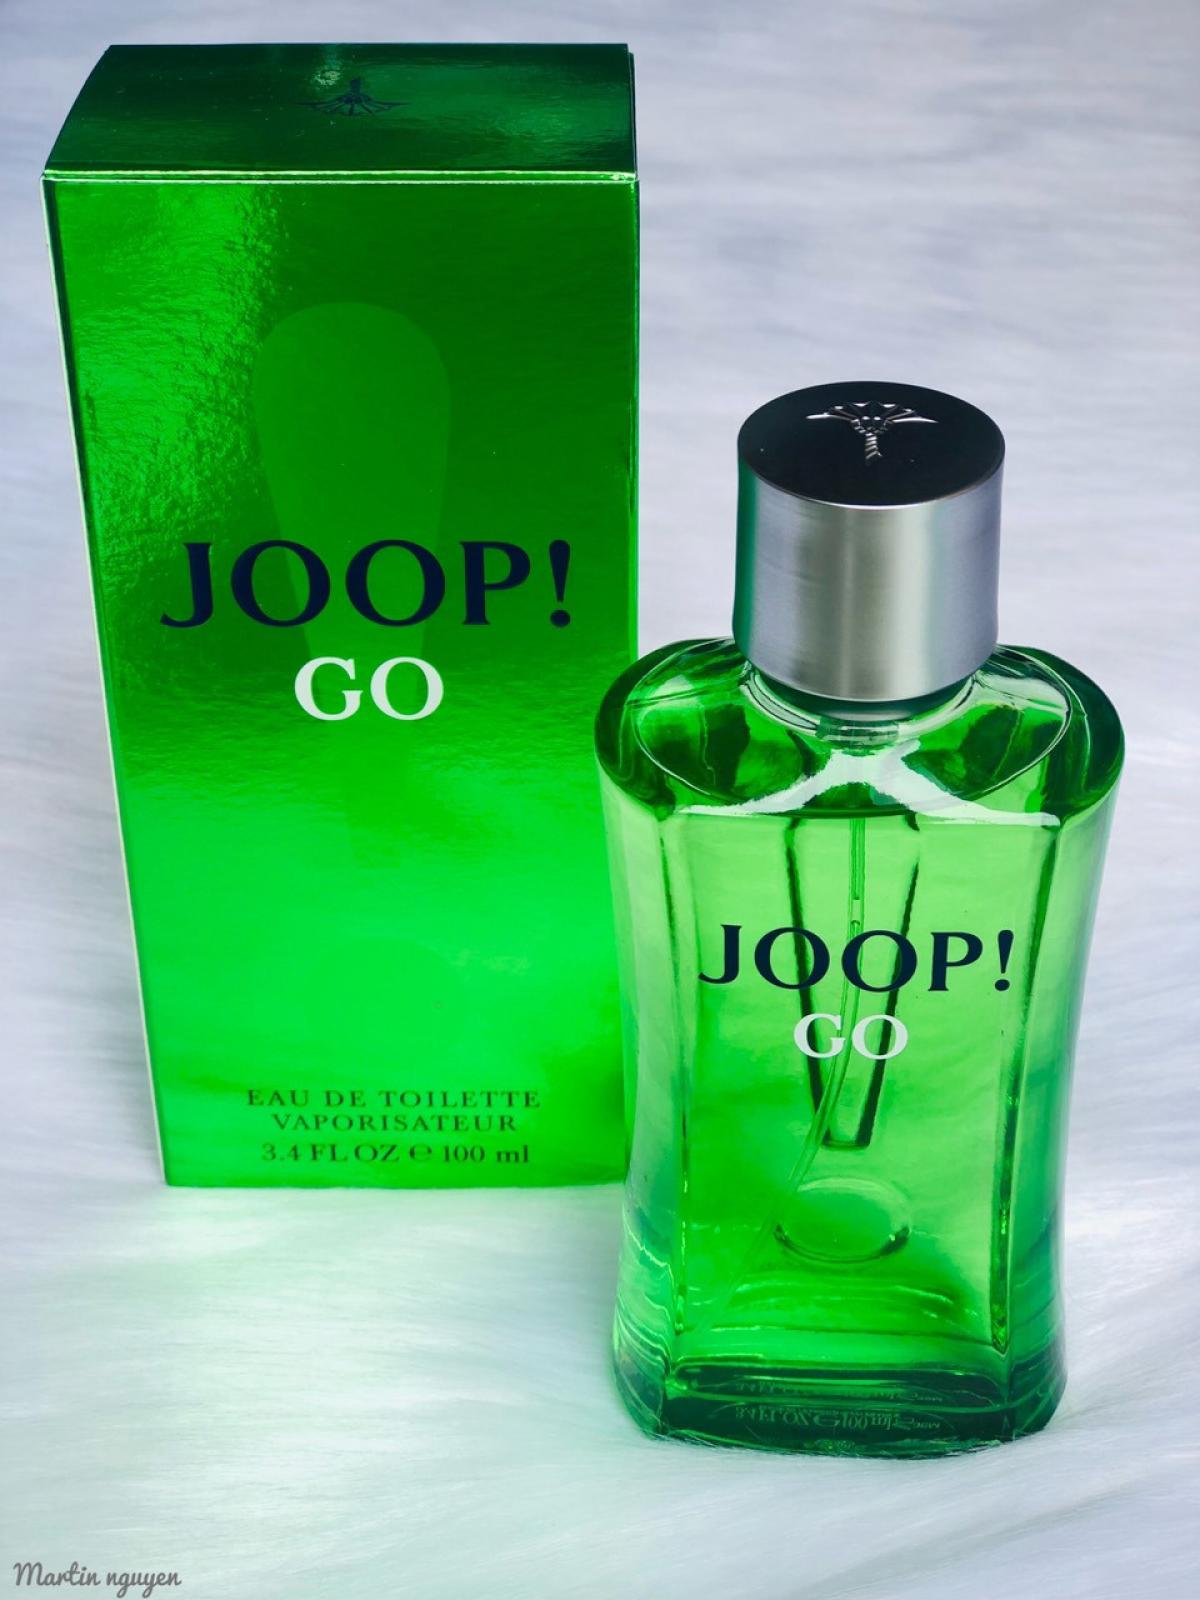 Joop! Go Joop! cologne - a fragrance for men 2006